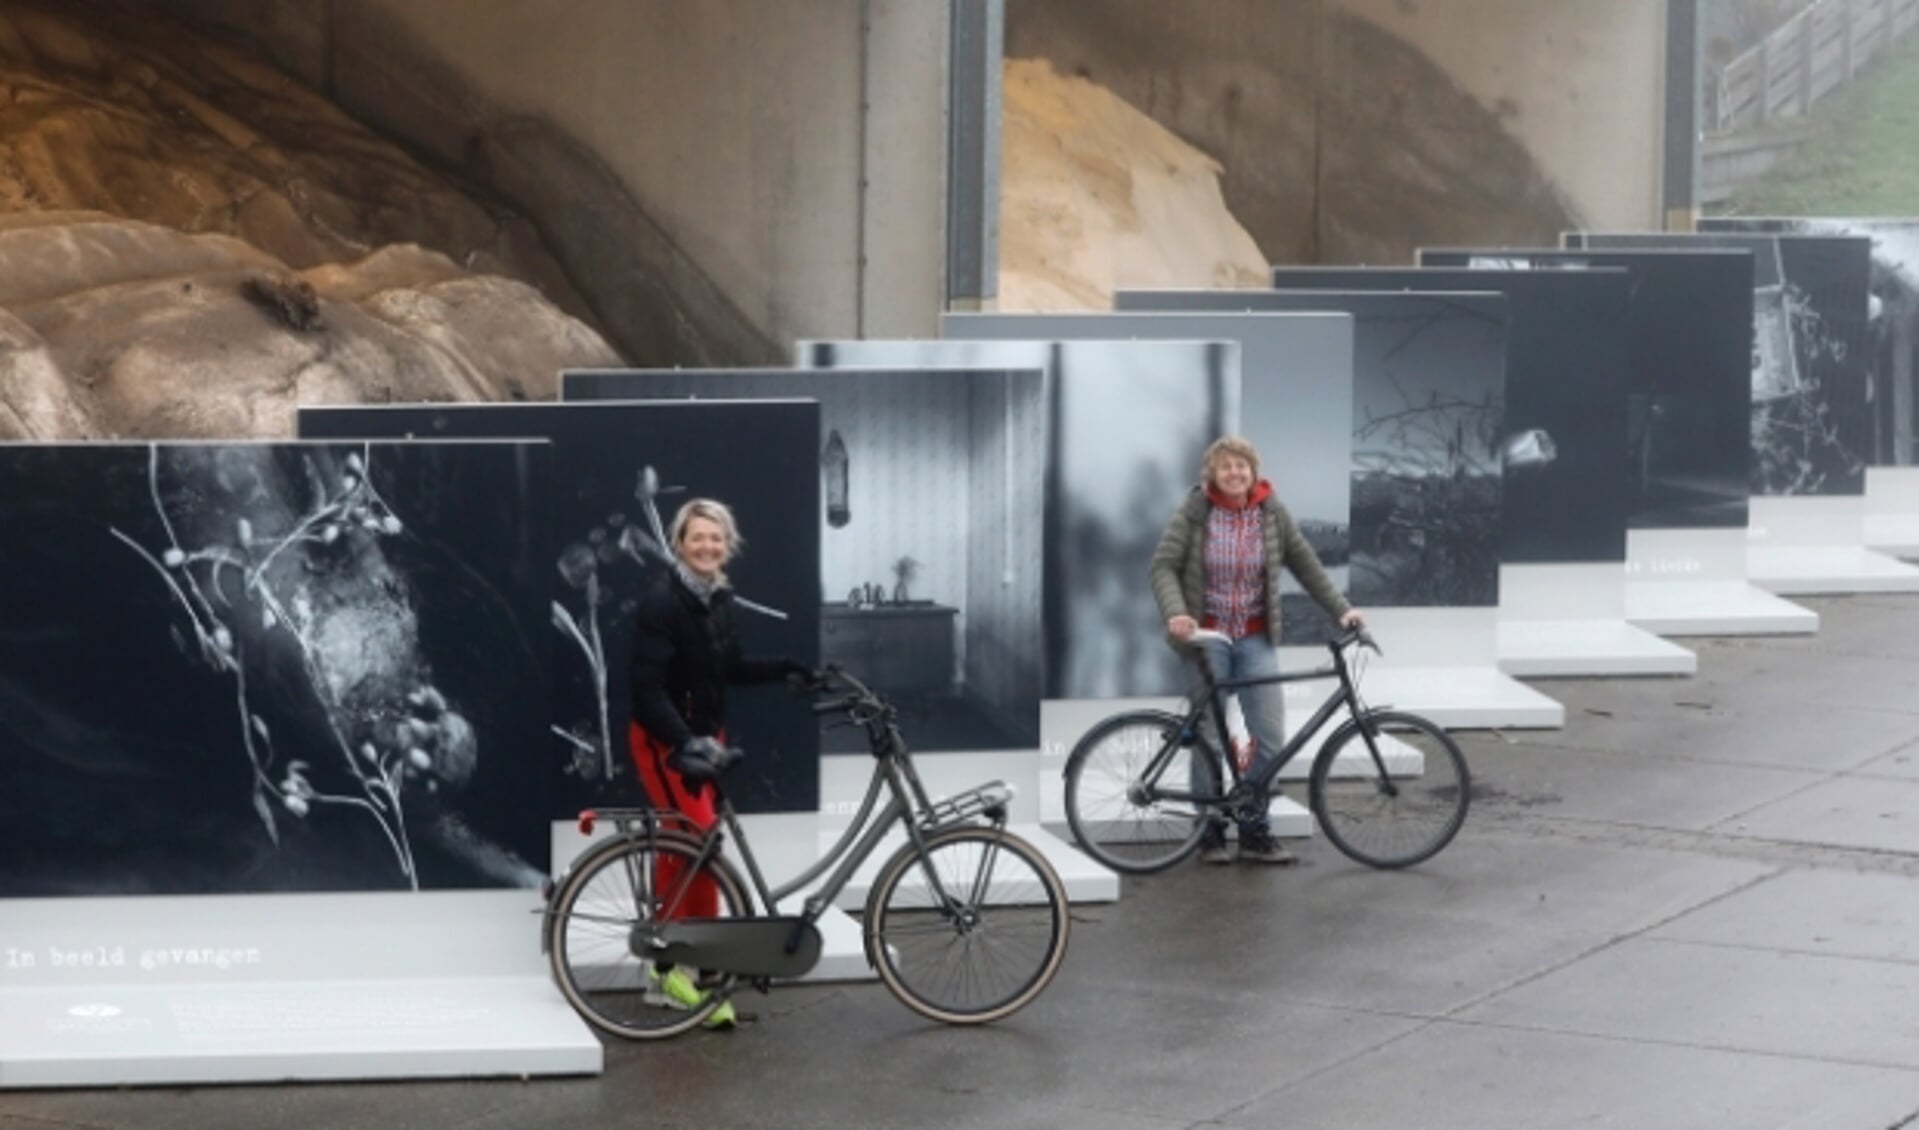  Erma Rotteveel en Kiek van der Poel bij de fotopanelen, vlak voordat deze geplaatst werden langs de route van de fietstocht ‘Veenmeermin waar ben je?’ Foto: aangeleverd